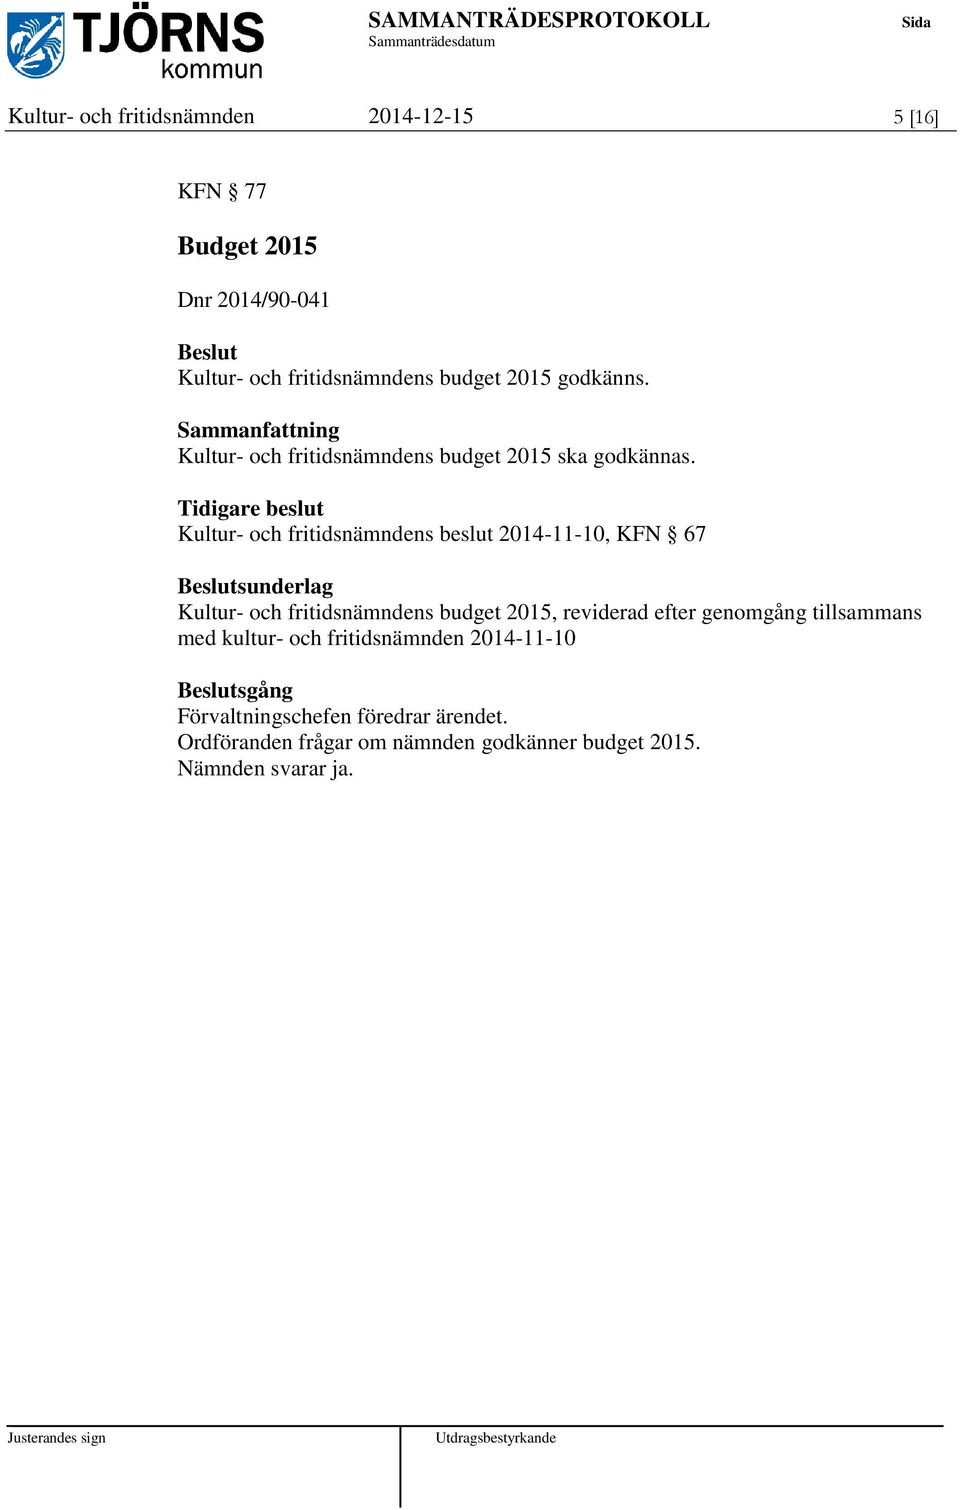 Tidigare beslut Kultur- och fritidsnämndens beslut 2014-11-10, KFN 67 sunderlag Kultur- och fritidsnämndens budget 2015,